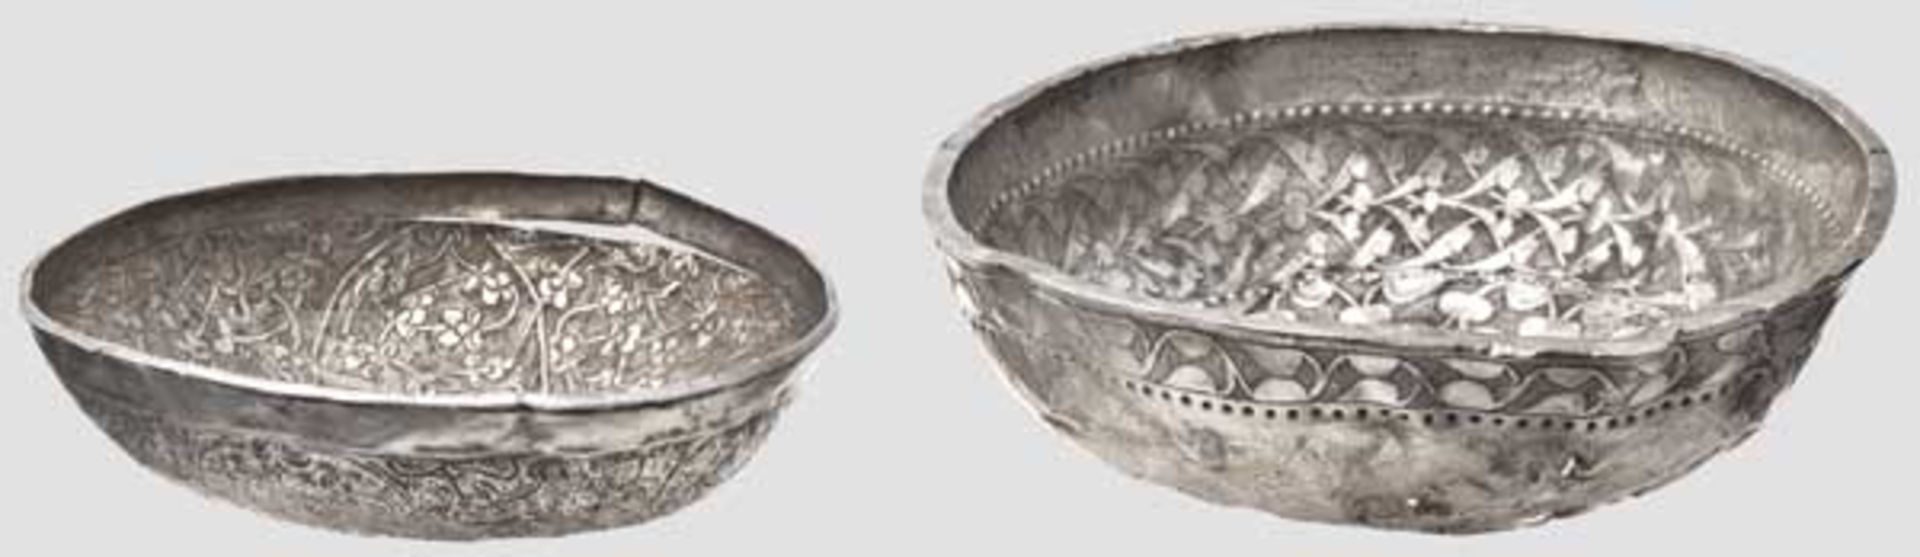 Zwei reich dekorierte Silberschalen, südosteuropäisches Mittelalter, 14. - frühes 15. Jhdt.   Zwei - Bild 2 aus 4